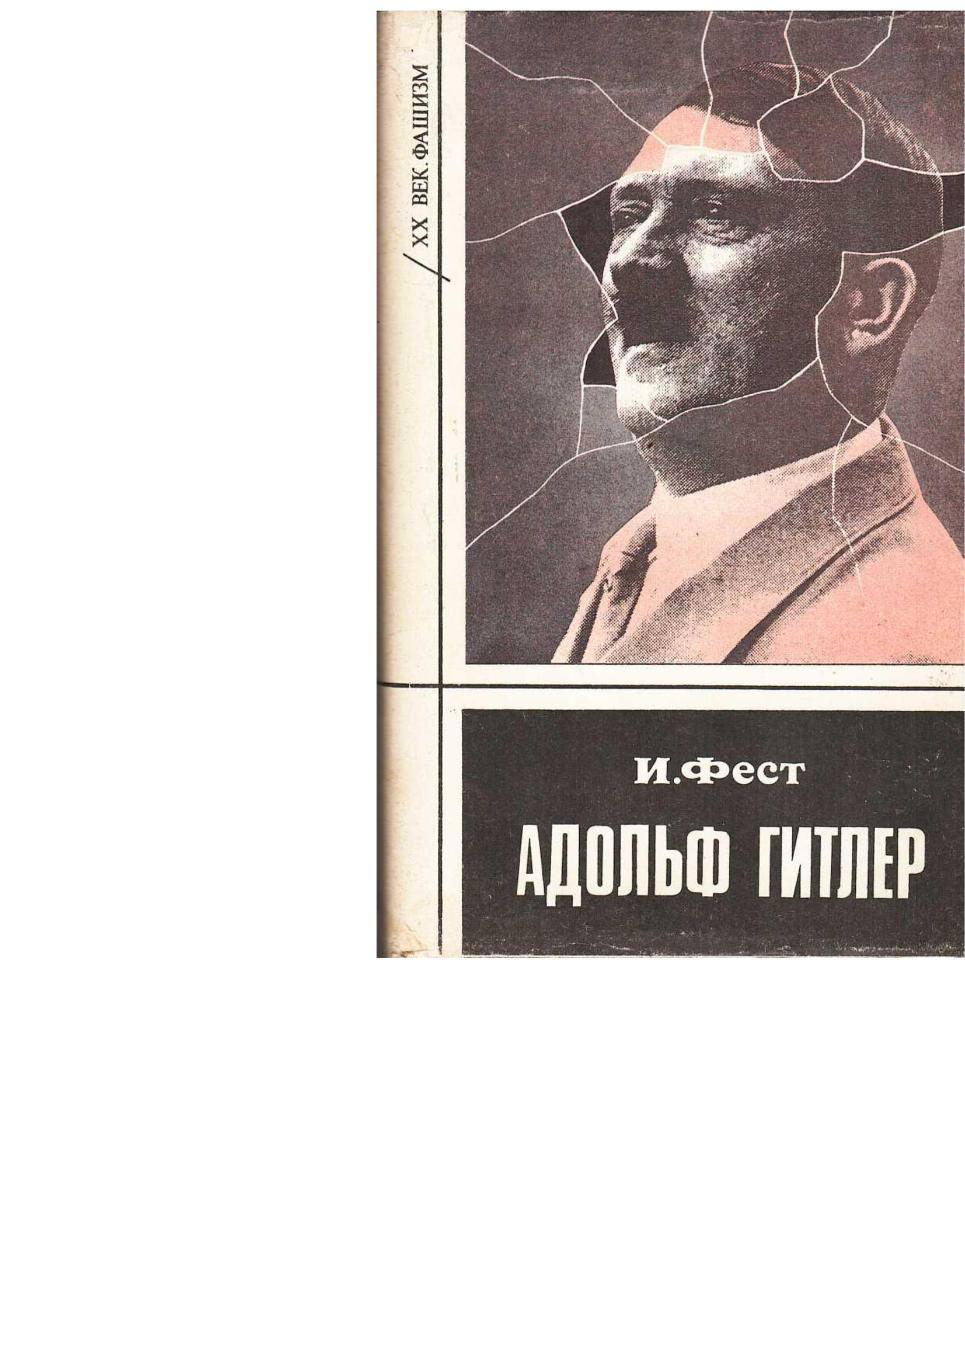 Фест И. Гитлер. Биография. Т. 1. – Пермь, 1993.